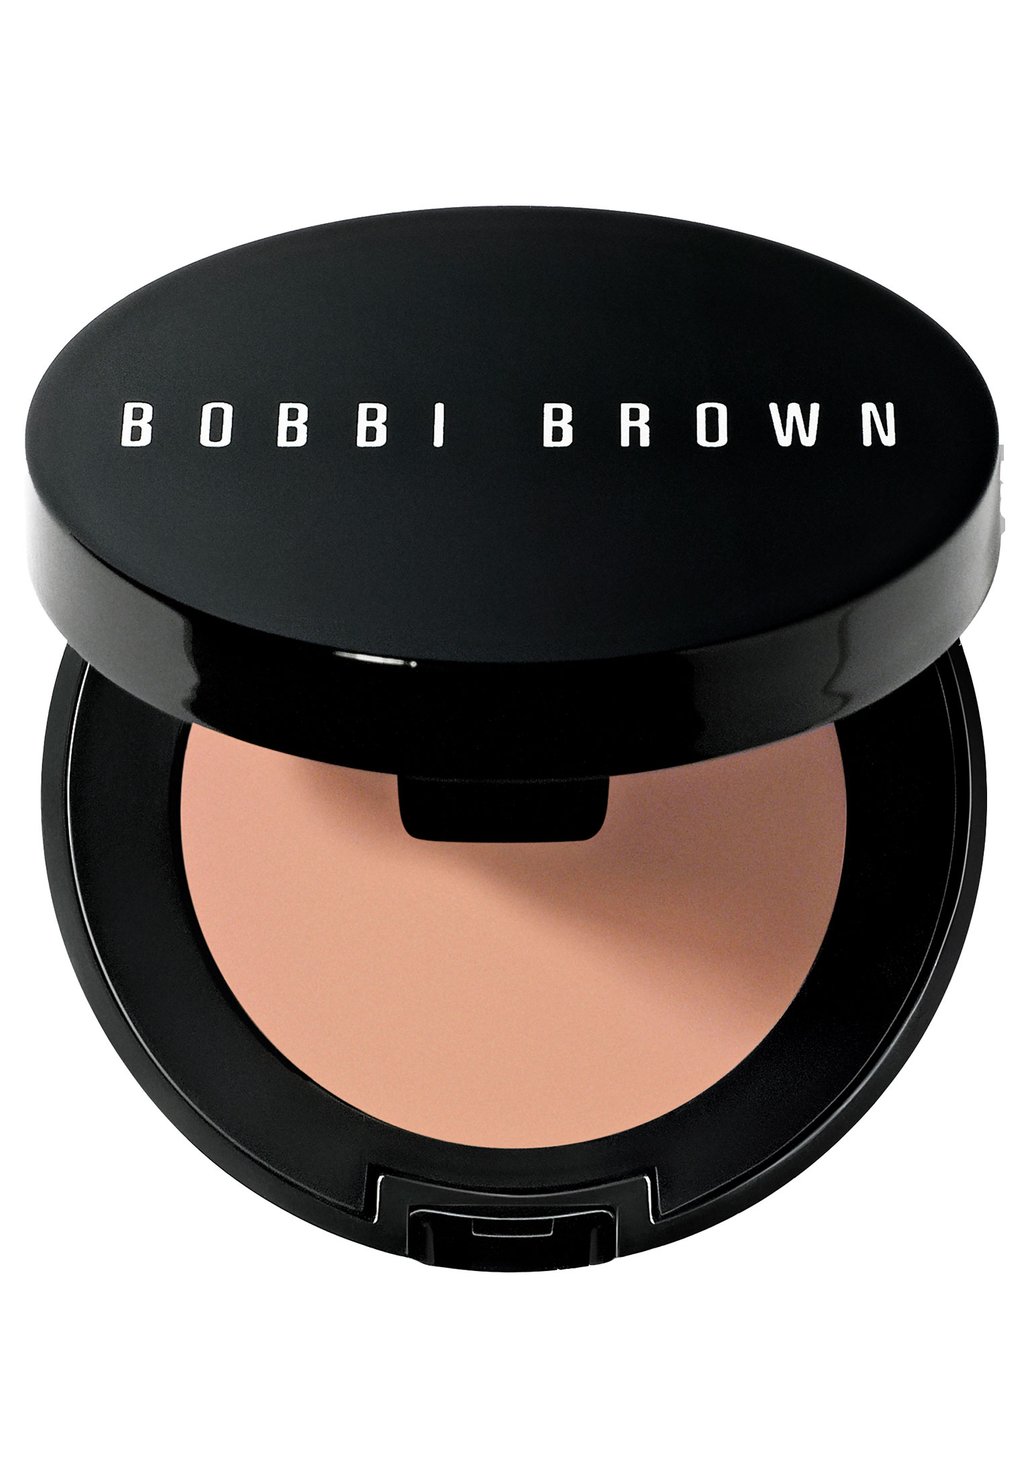 Консилер Corrector Bobbi Brown, цвет light bisque bobbi brown устойчивый корректор в стике skin corrector stick bisque